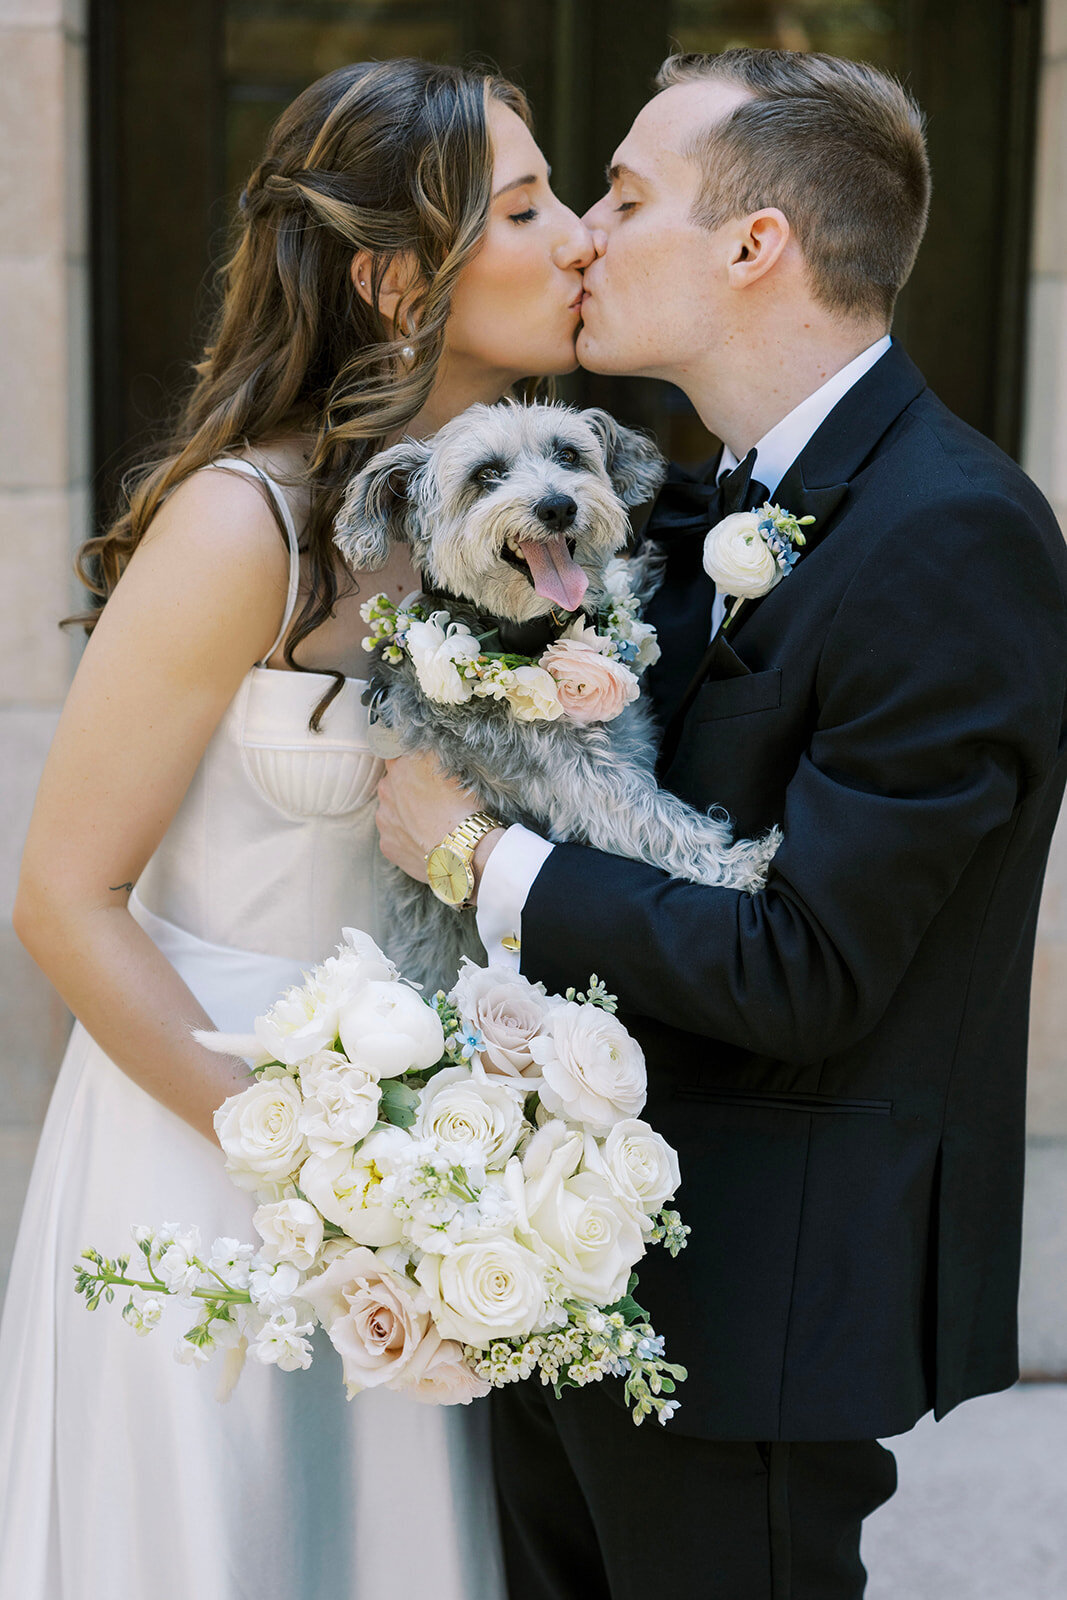 CORNELIA ZAISS PHOTOGRAPHY COURTNEY + ANDREW WEDDING 0716_websize